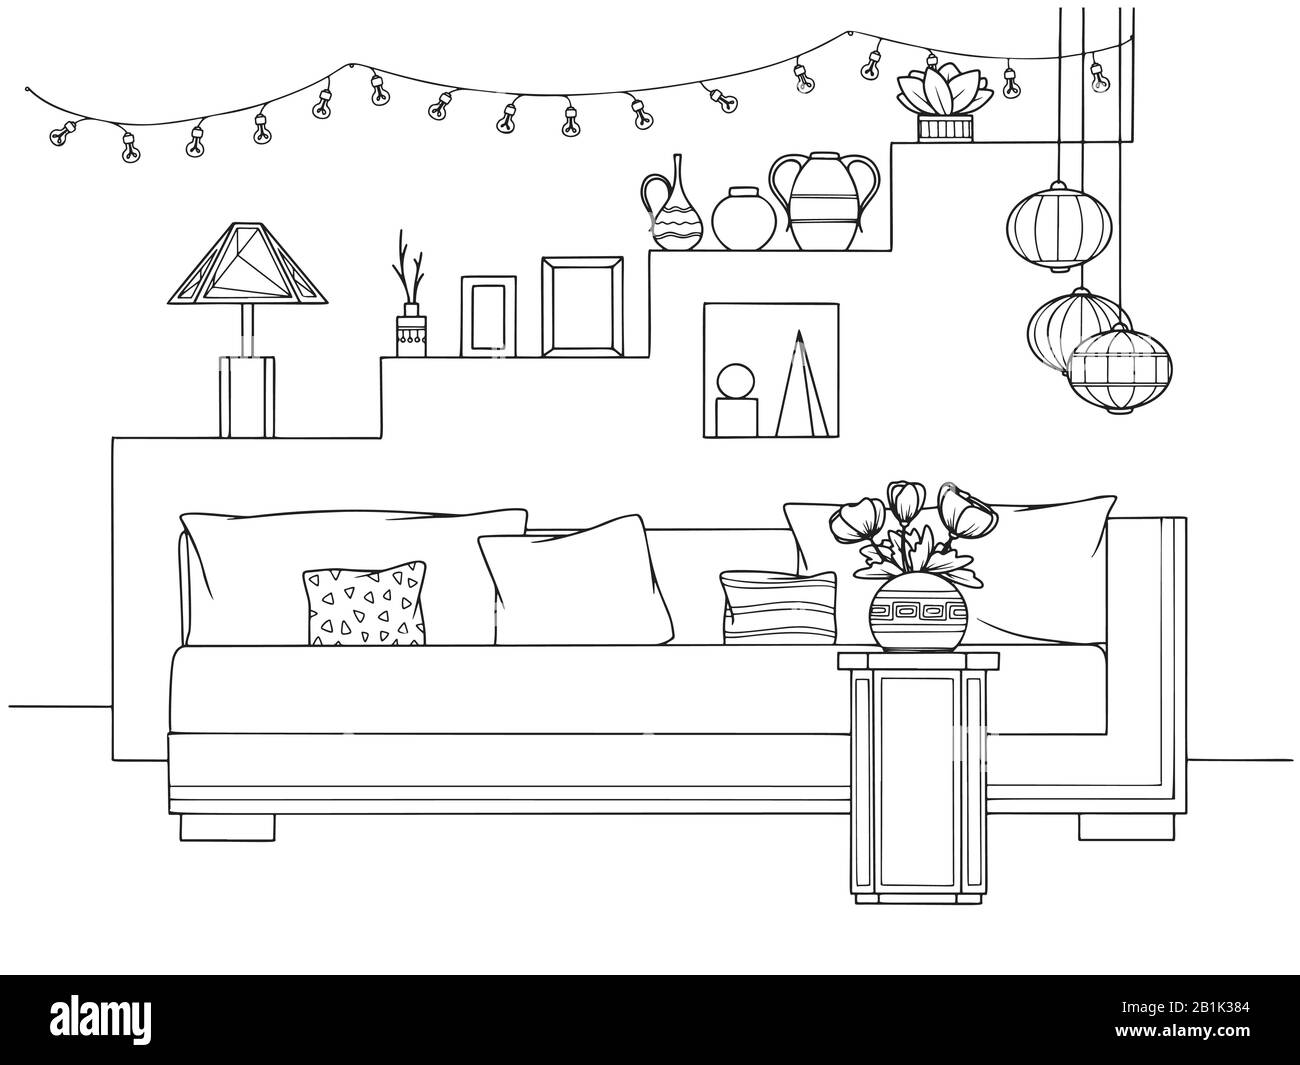 Abbozzate un accogliente soggiorno in stile boho. Divano, tavolo e vari elementi decorativi. Illustrazione vettoriale nello stile di schizzo. Illustrazione Vettoriale